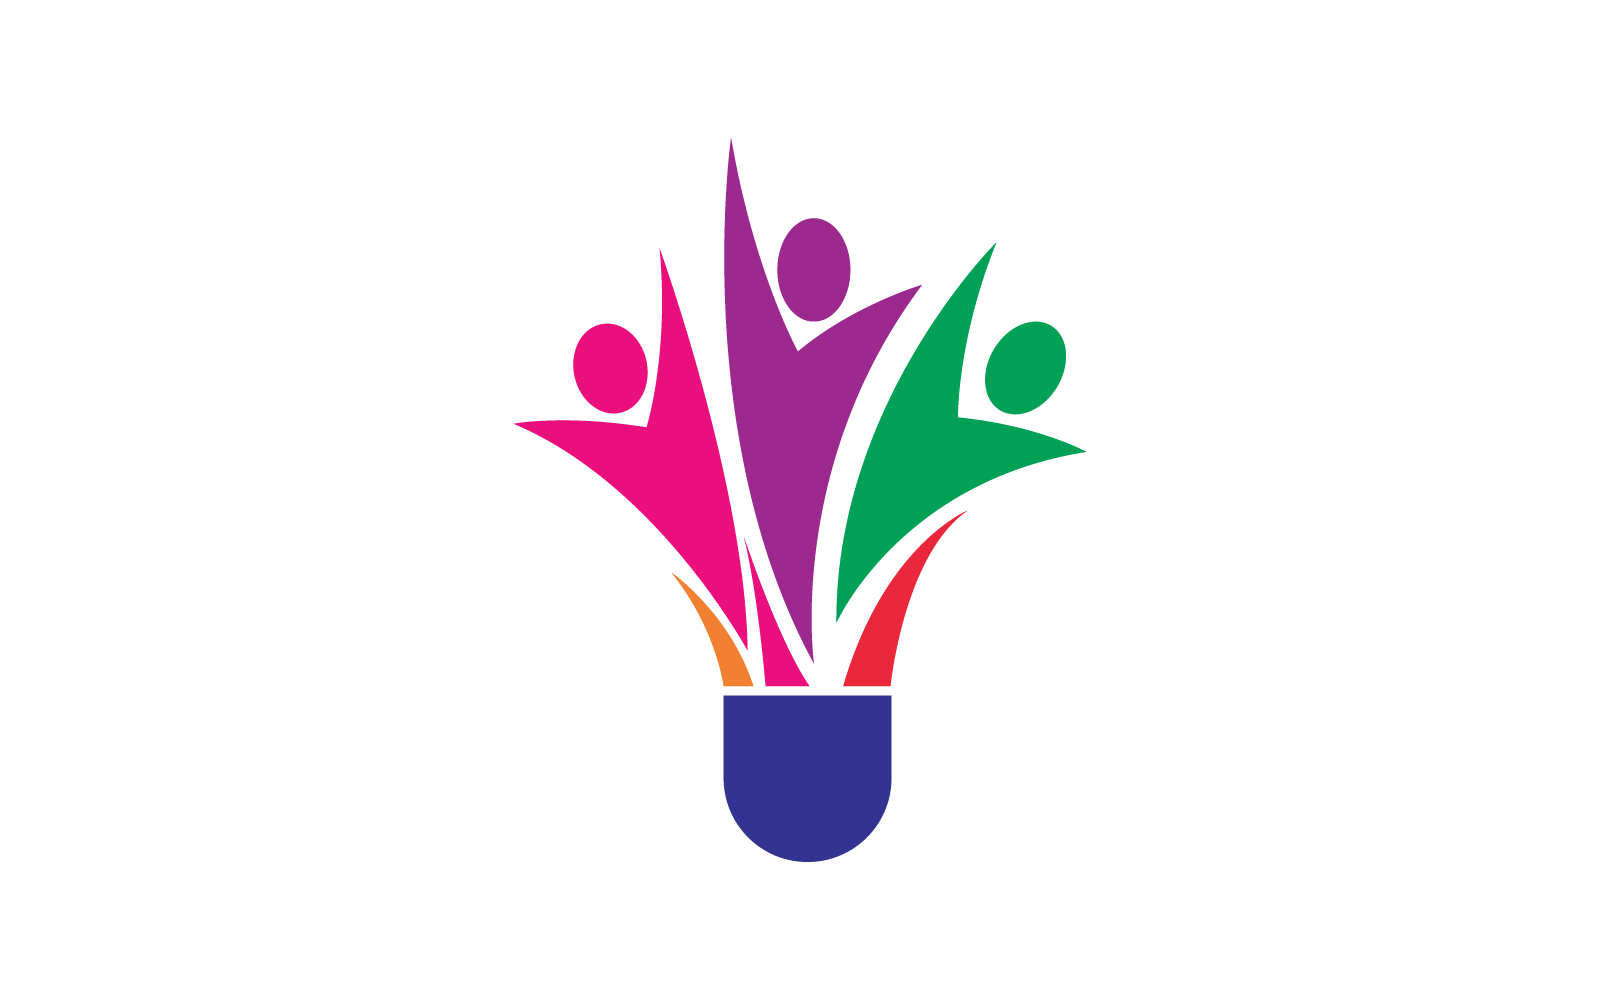 Suttle cock badminton logo vector design Logo Template